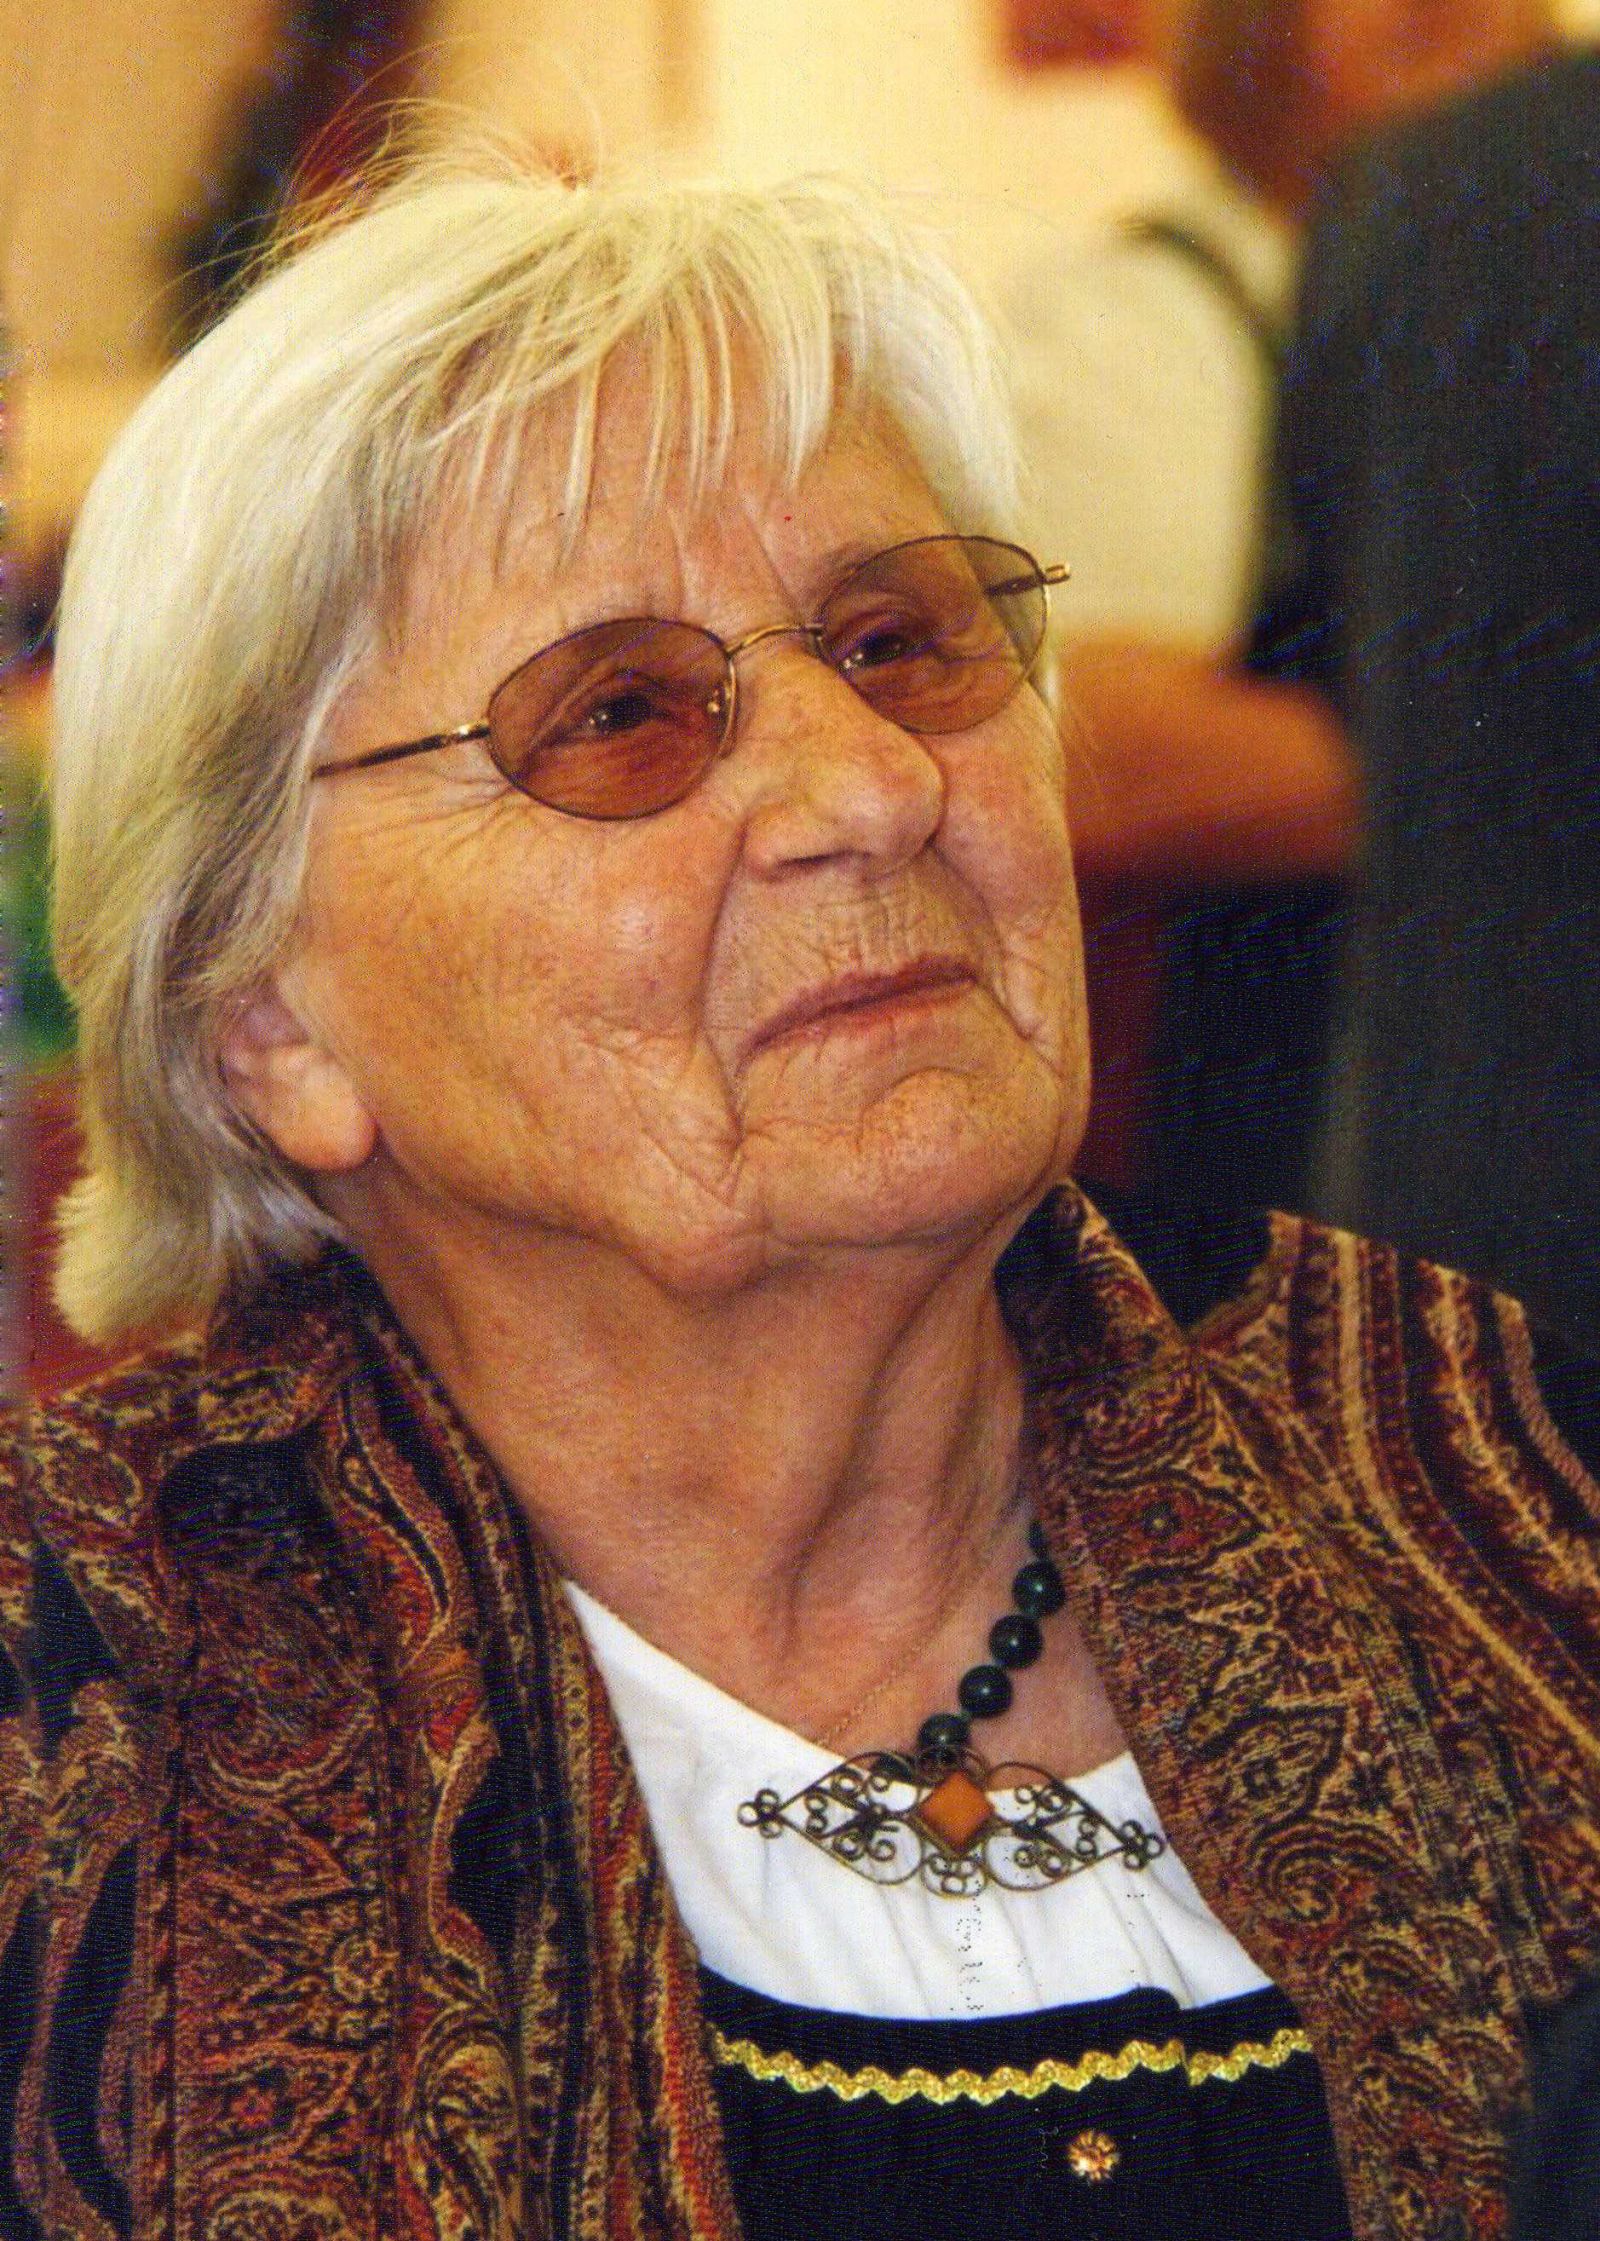 Gertrud Fink (99)